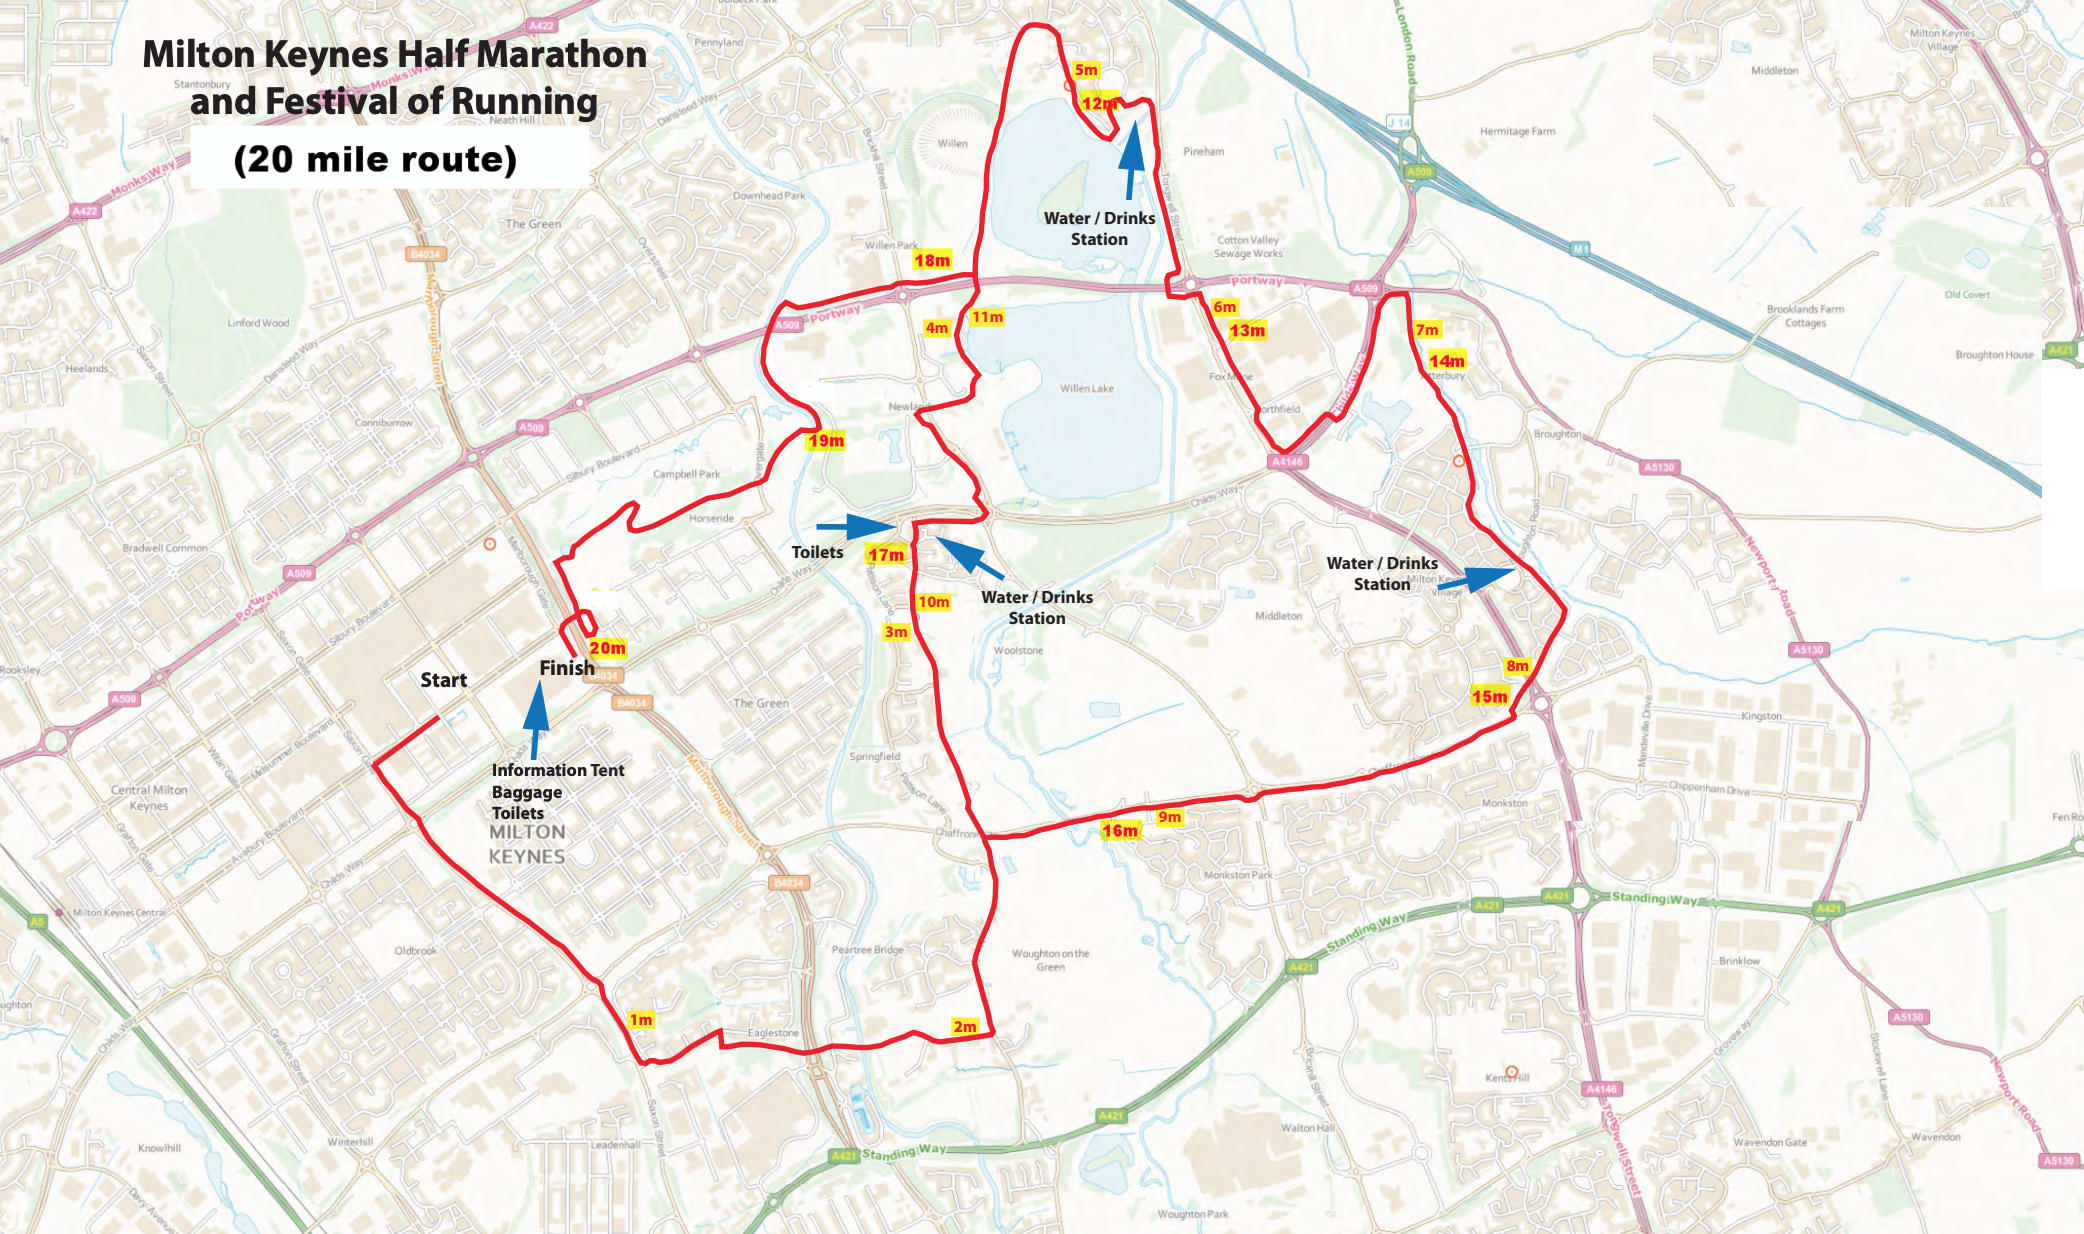 MK Festival of Running Running in Milton Keynes — Let’s Do This